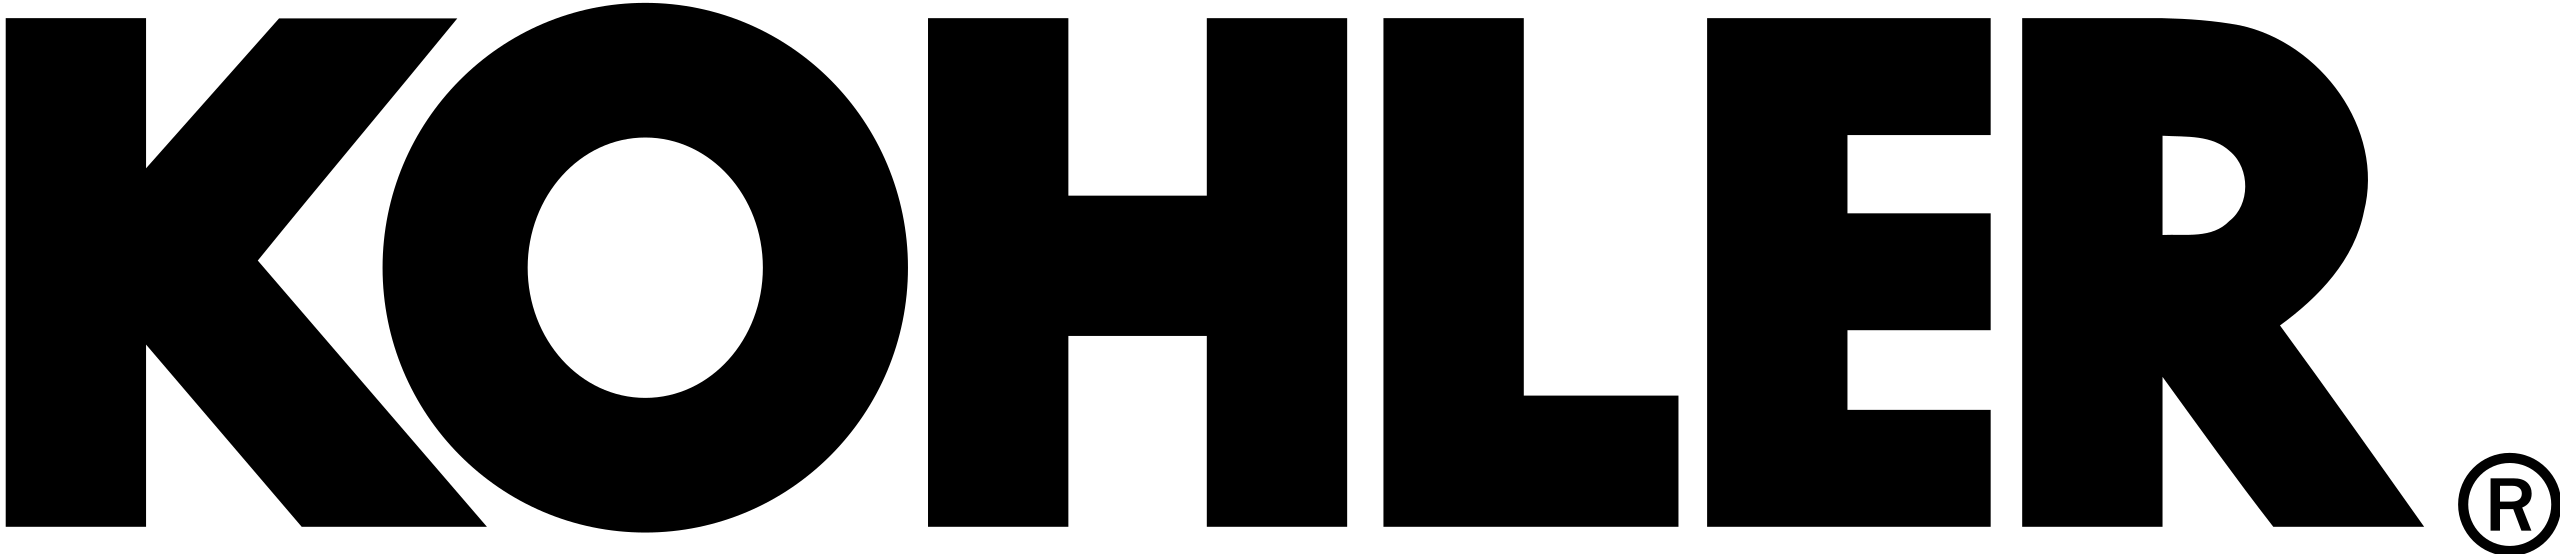 kohler logo - ماه صنعت انرژی 